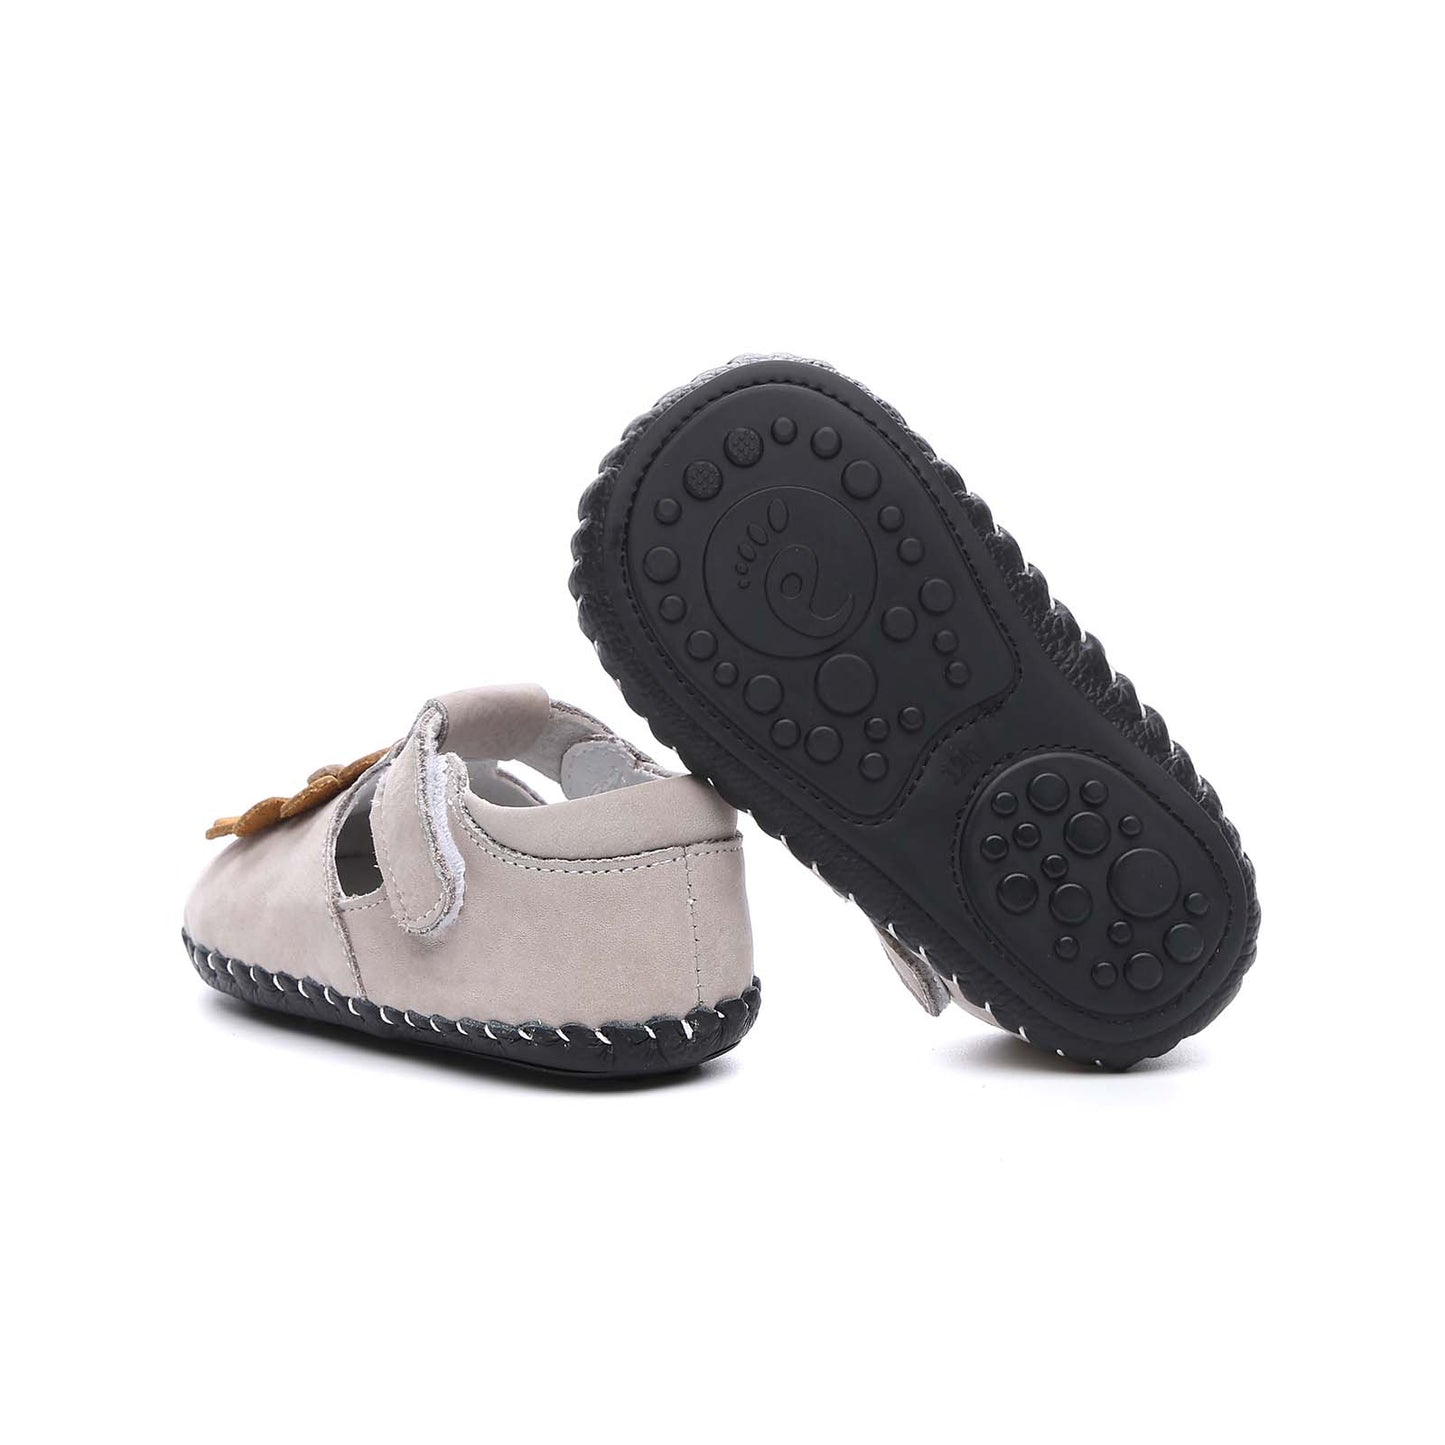 Freycoo - Cream Leonard Infant Shoes